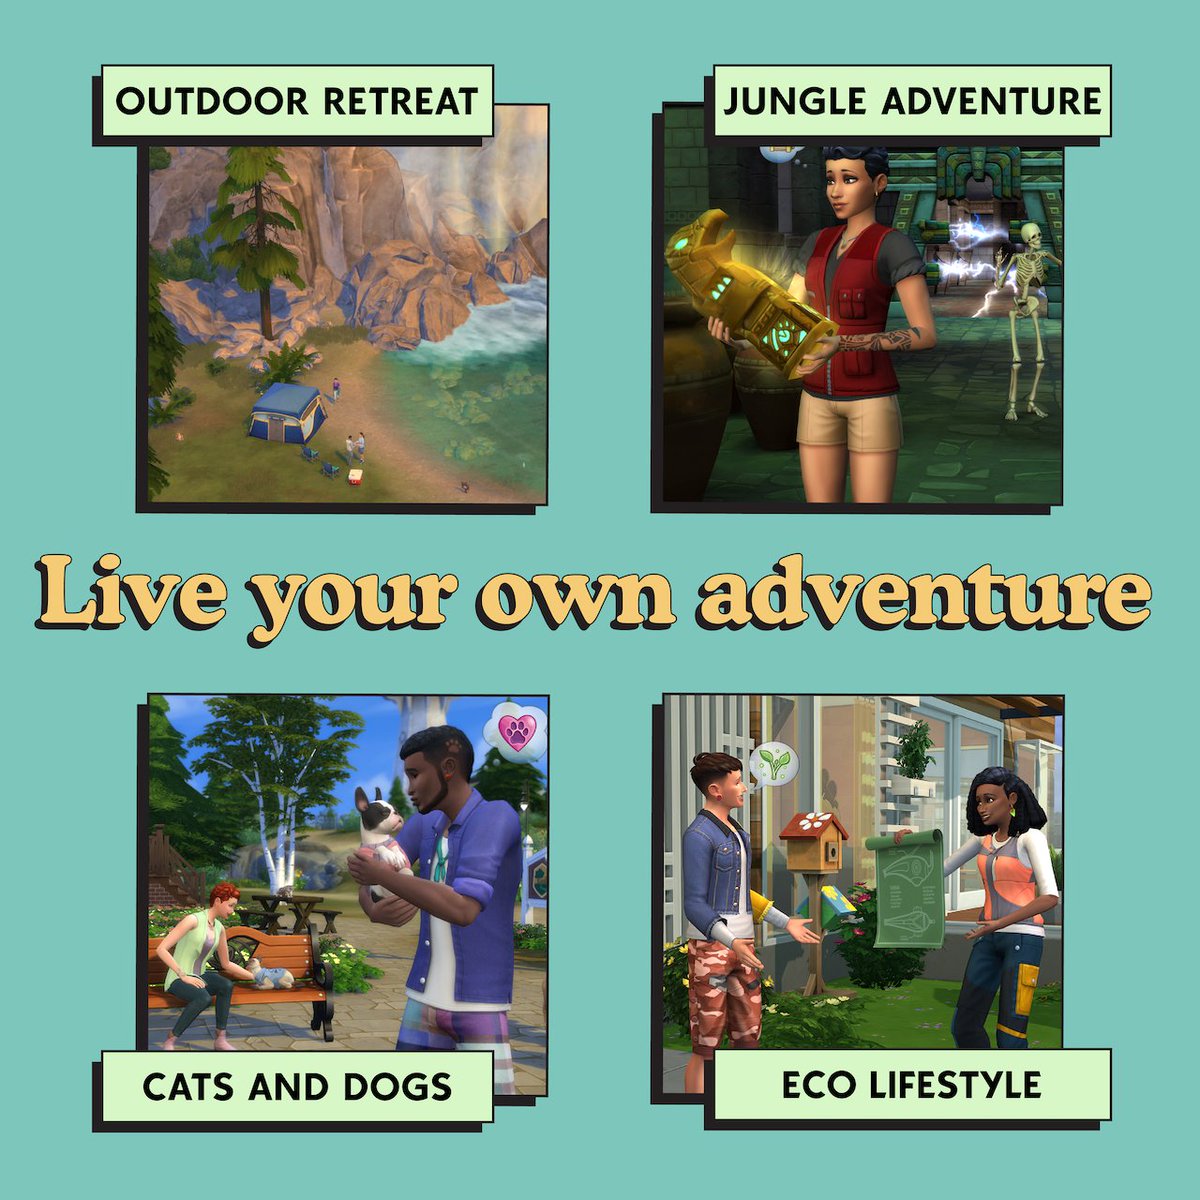 Un propósito de año nuevo: Descubrir nuevos lugares 🏔 

Definid vuestra propia aventura con estos packs 🤸🏼‍♂️ #SimsSelves

Viajeros, ¿qué viaje es vuestro favorito?